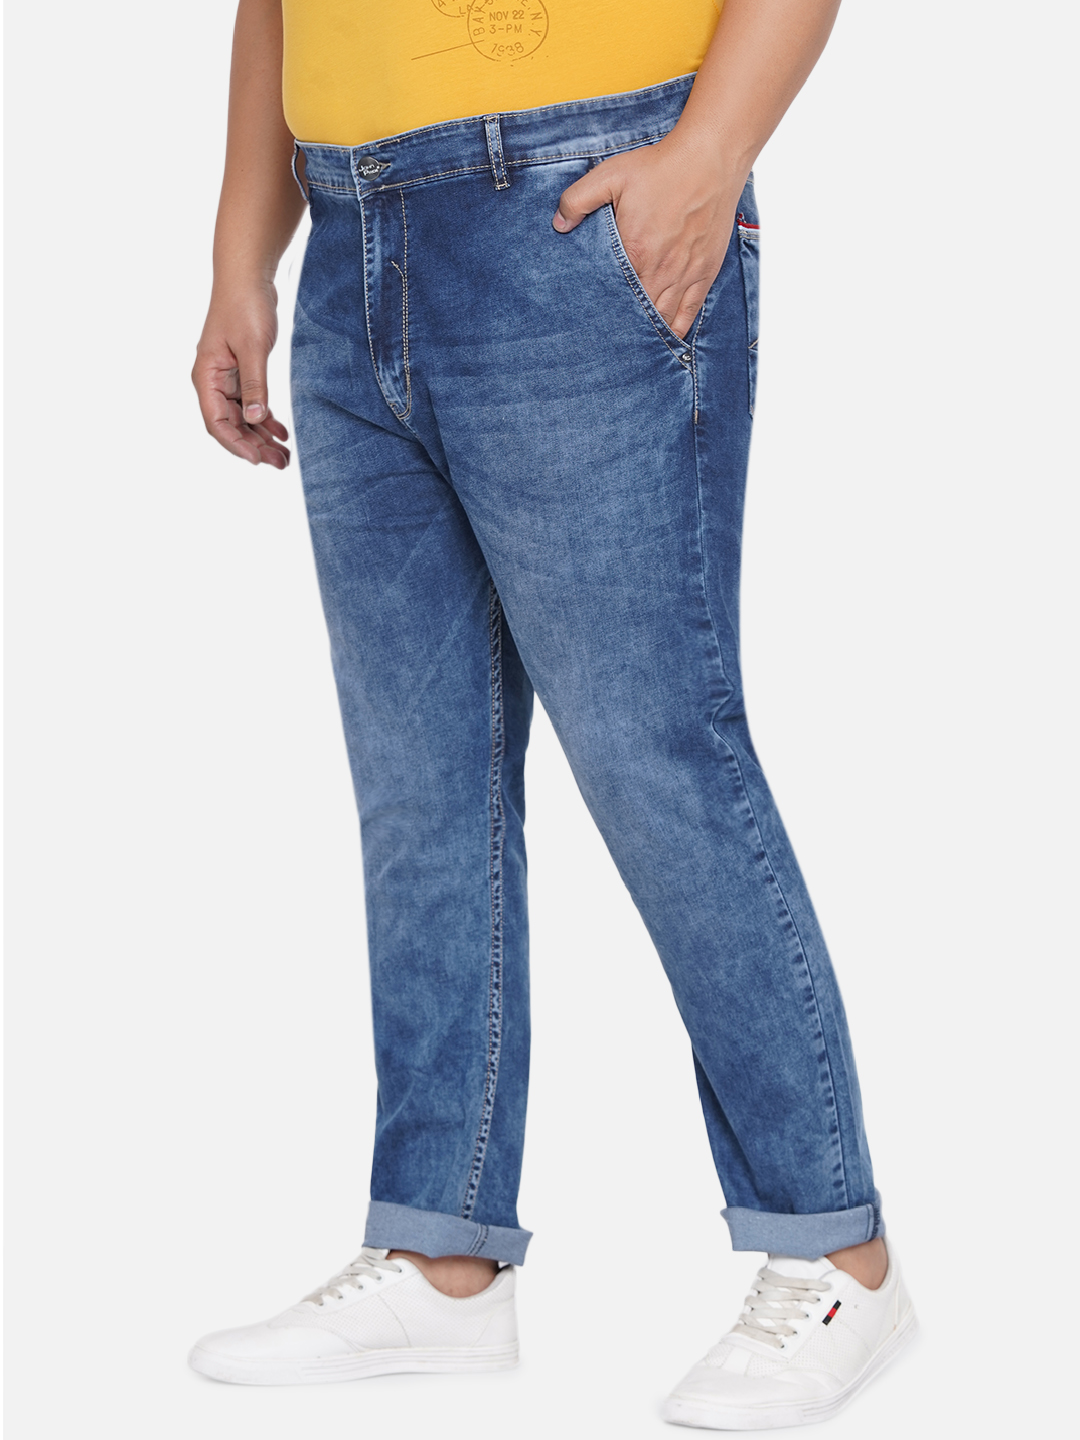 bottomwear/jeans/EJPJ25021/ejpj25021-4.jpg